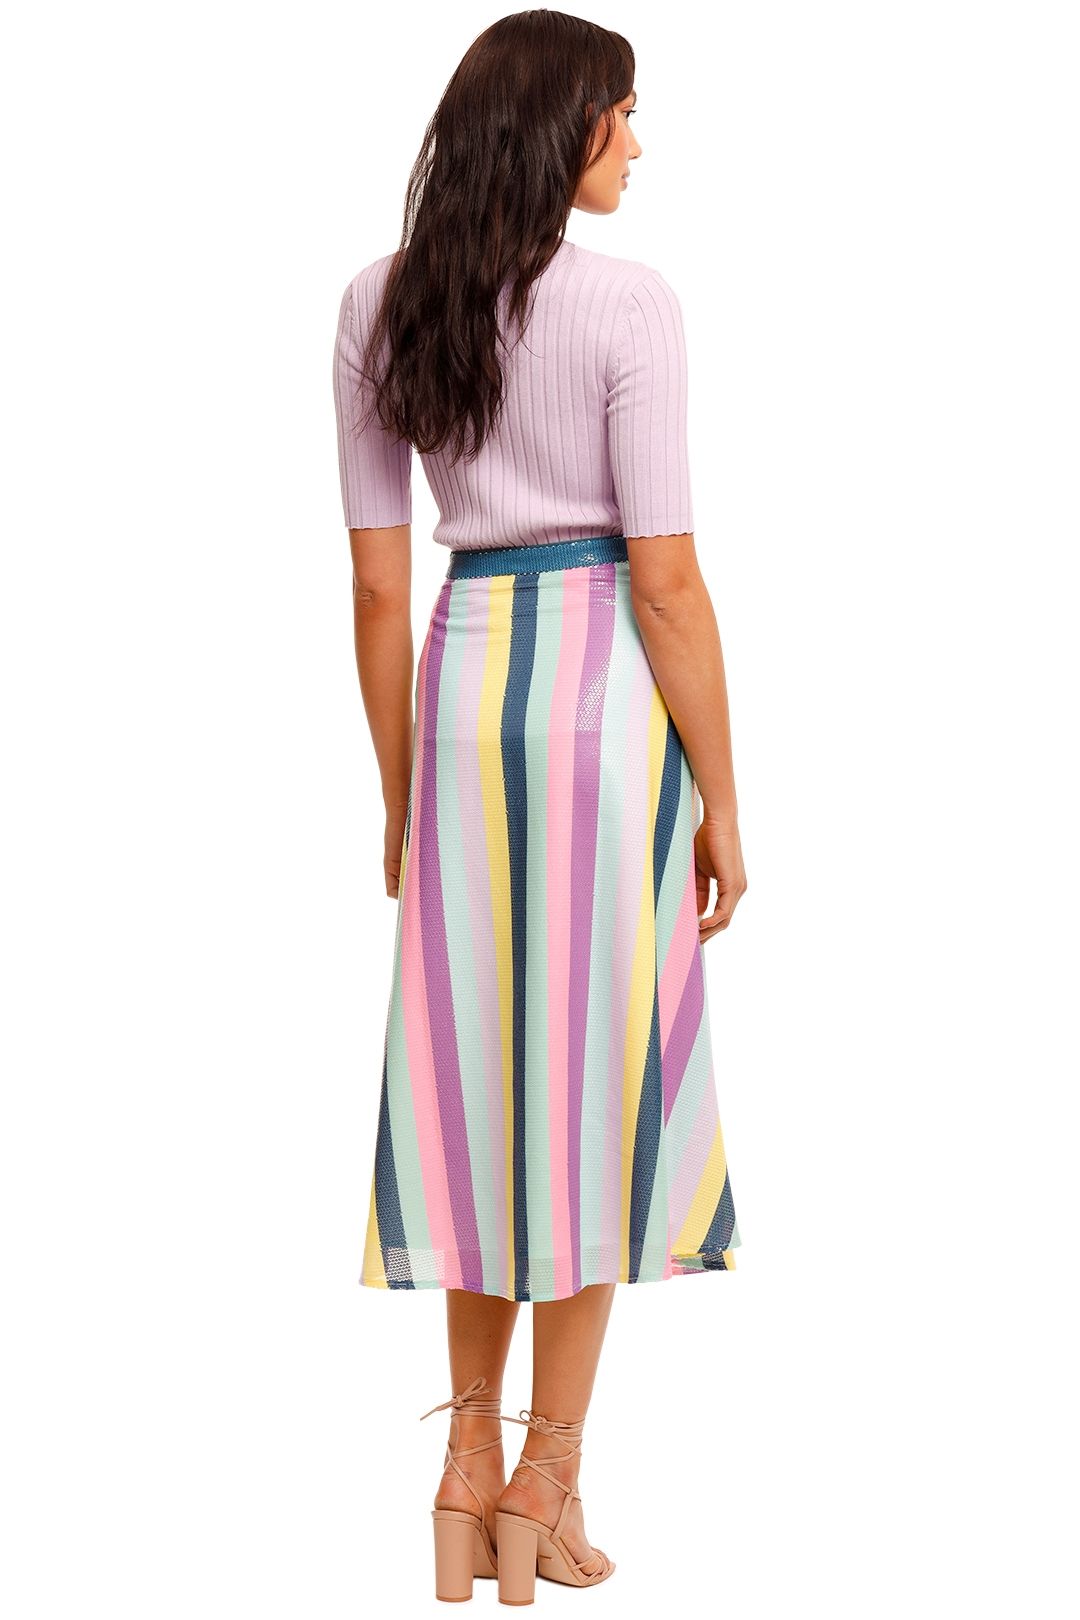 Olivia Rubin Penelope Striped Skirt Multi